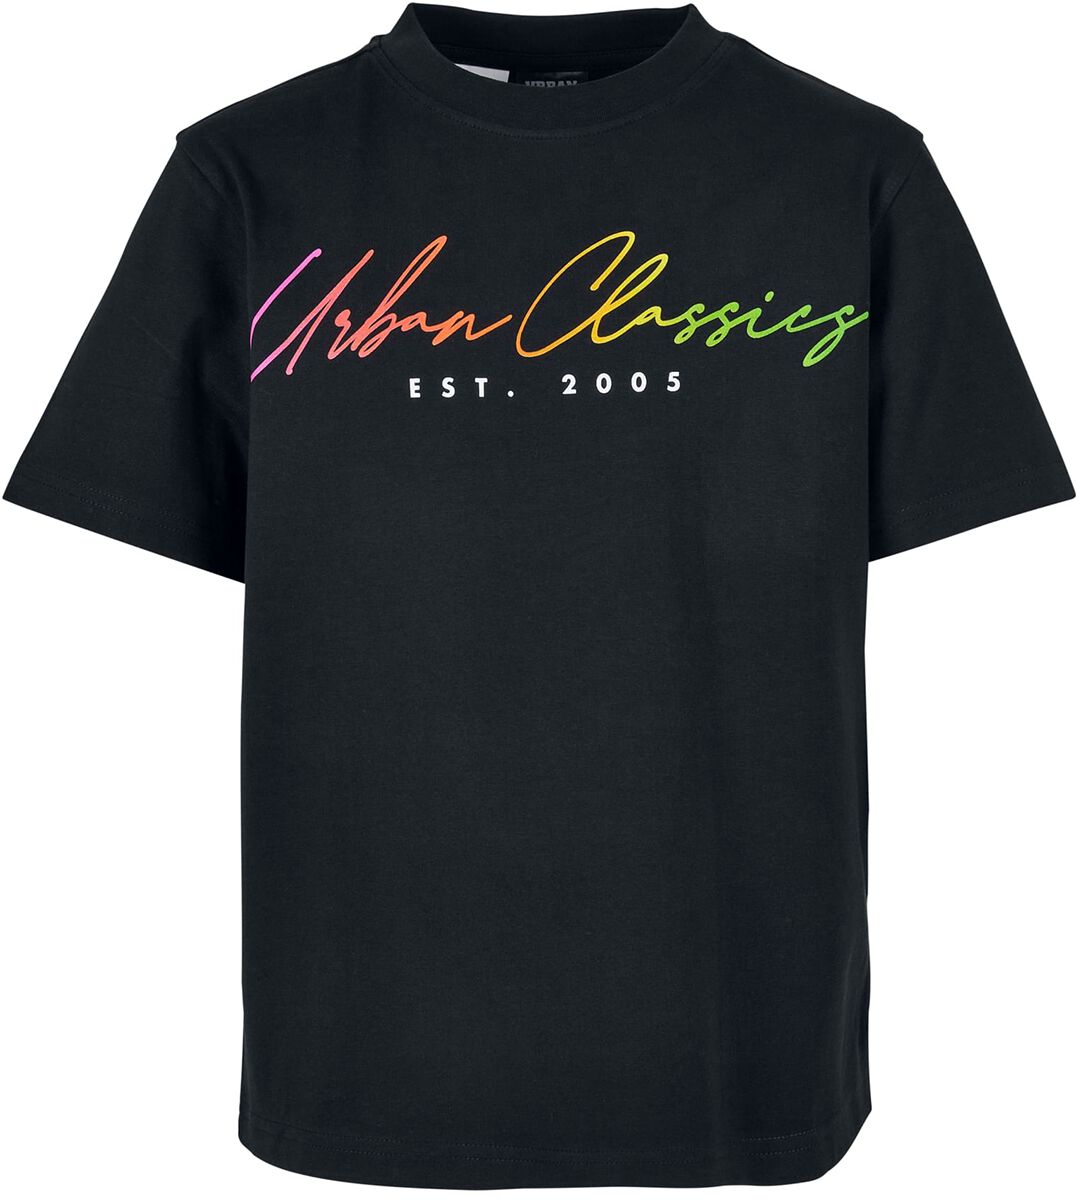 T-shirt de Urban Classics - Boys Scrips Logo Tee - 110/116 à 158/164 - pour garçons - noir